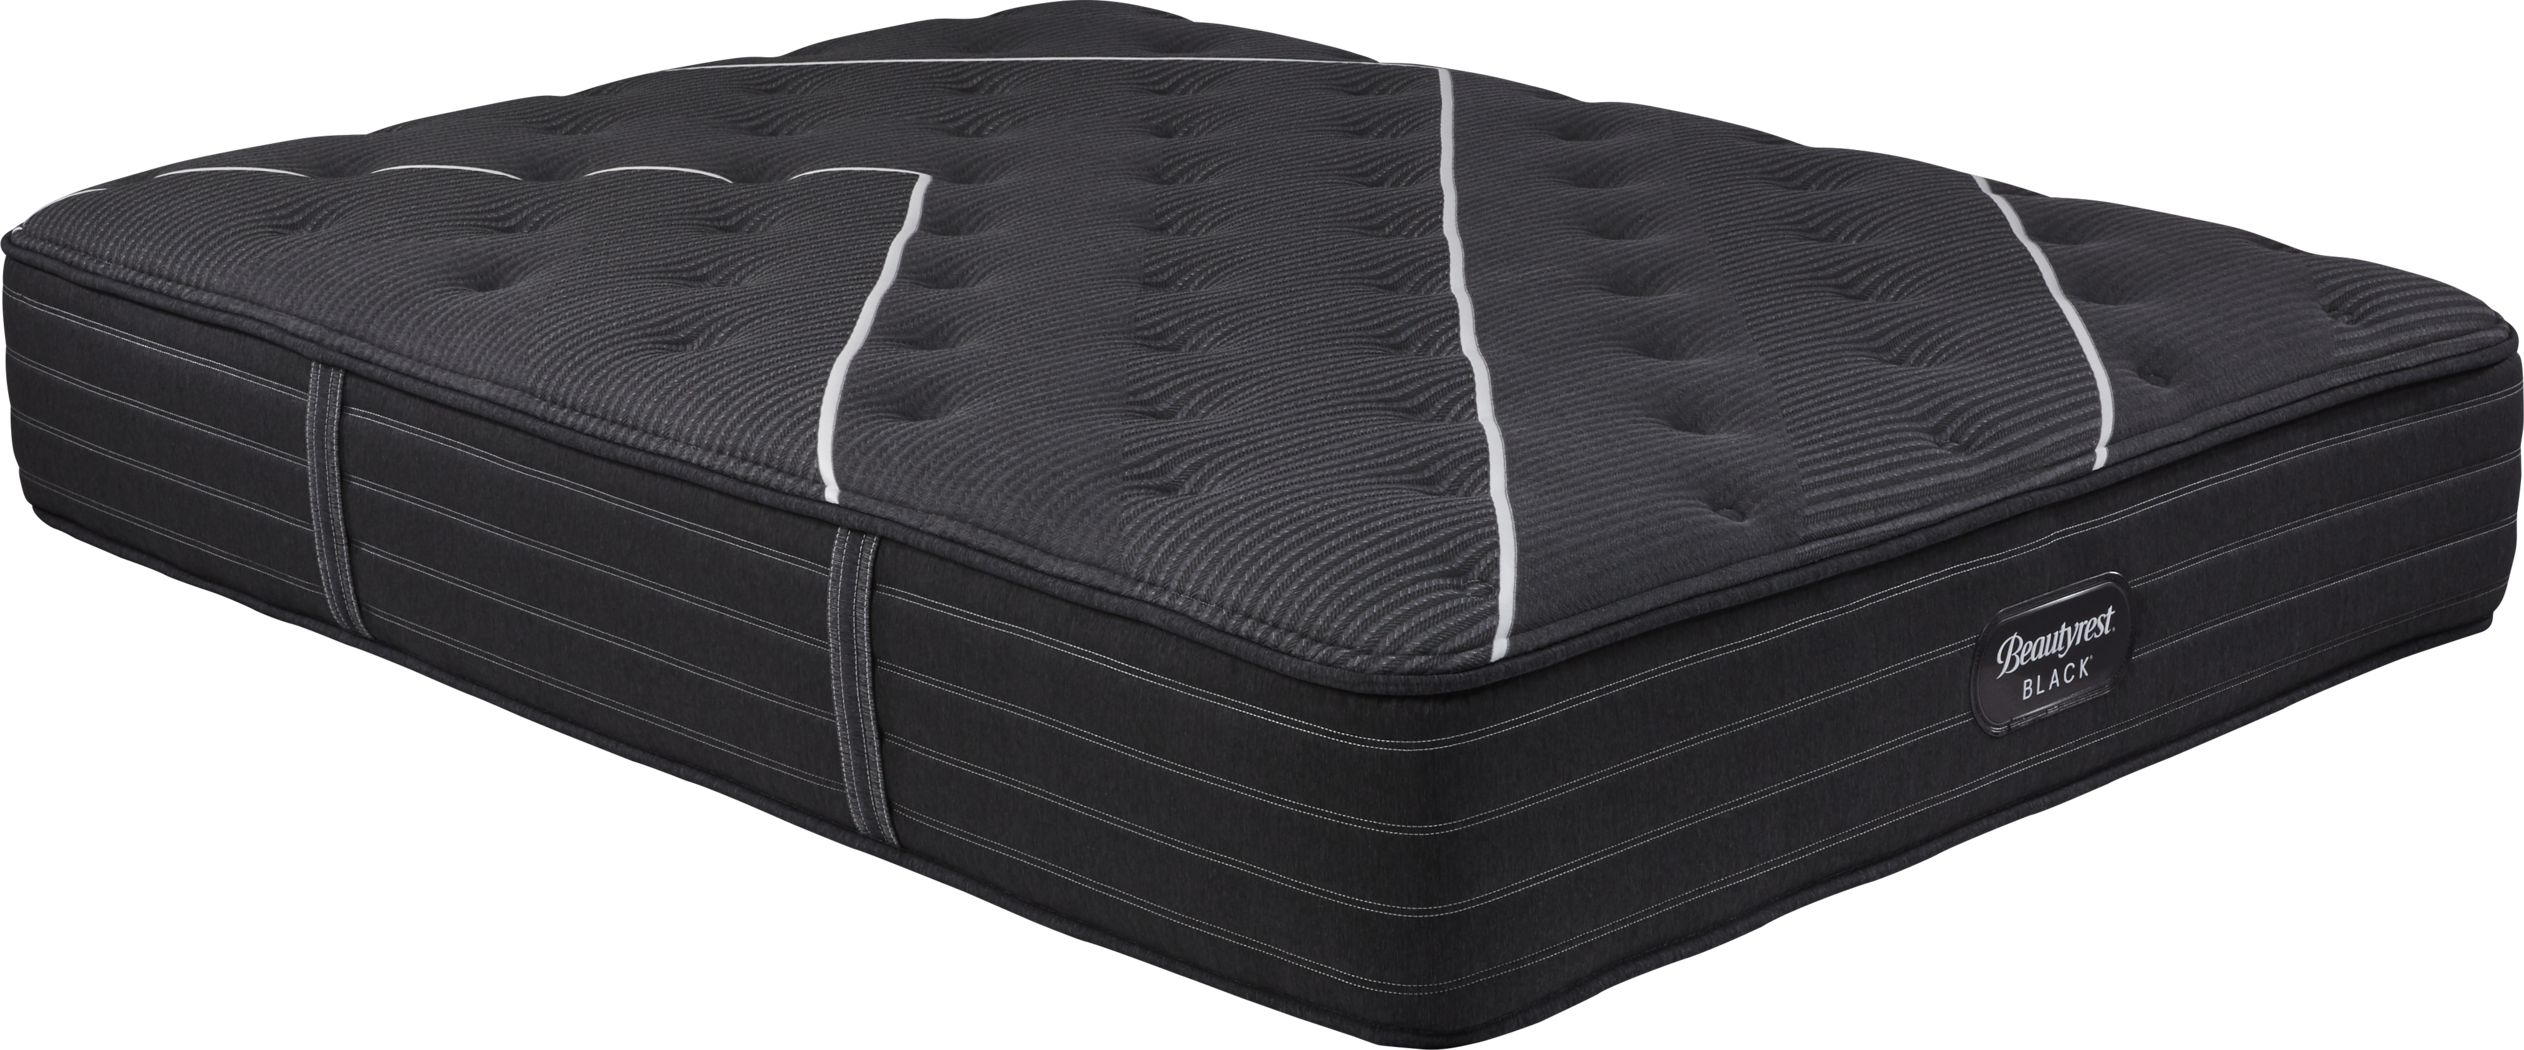 beautyrest hybrid carbondale medium queen mattress